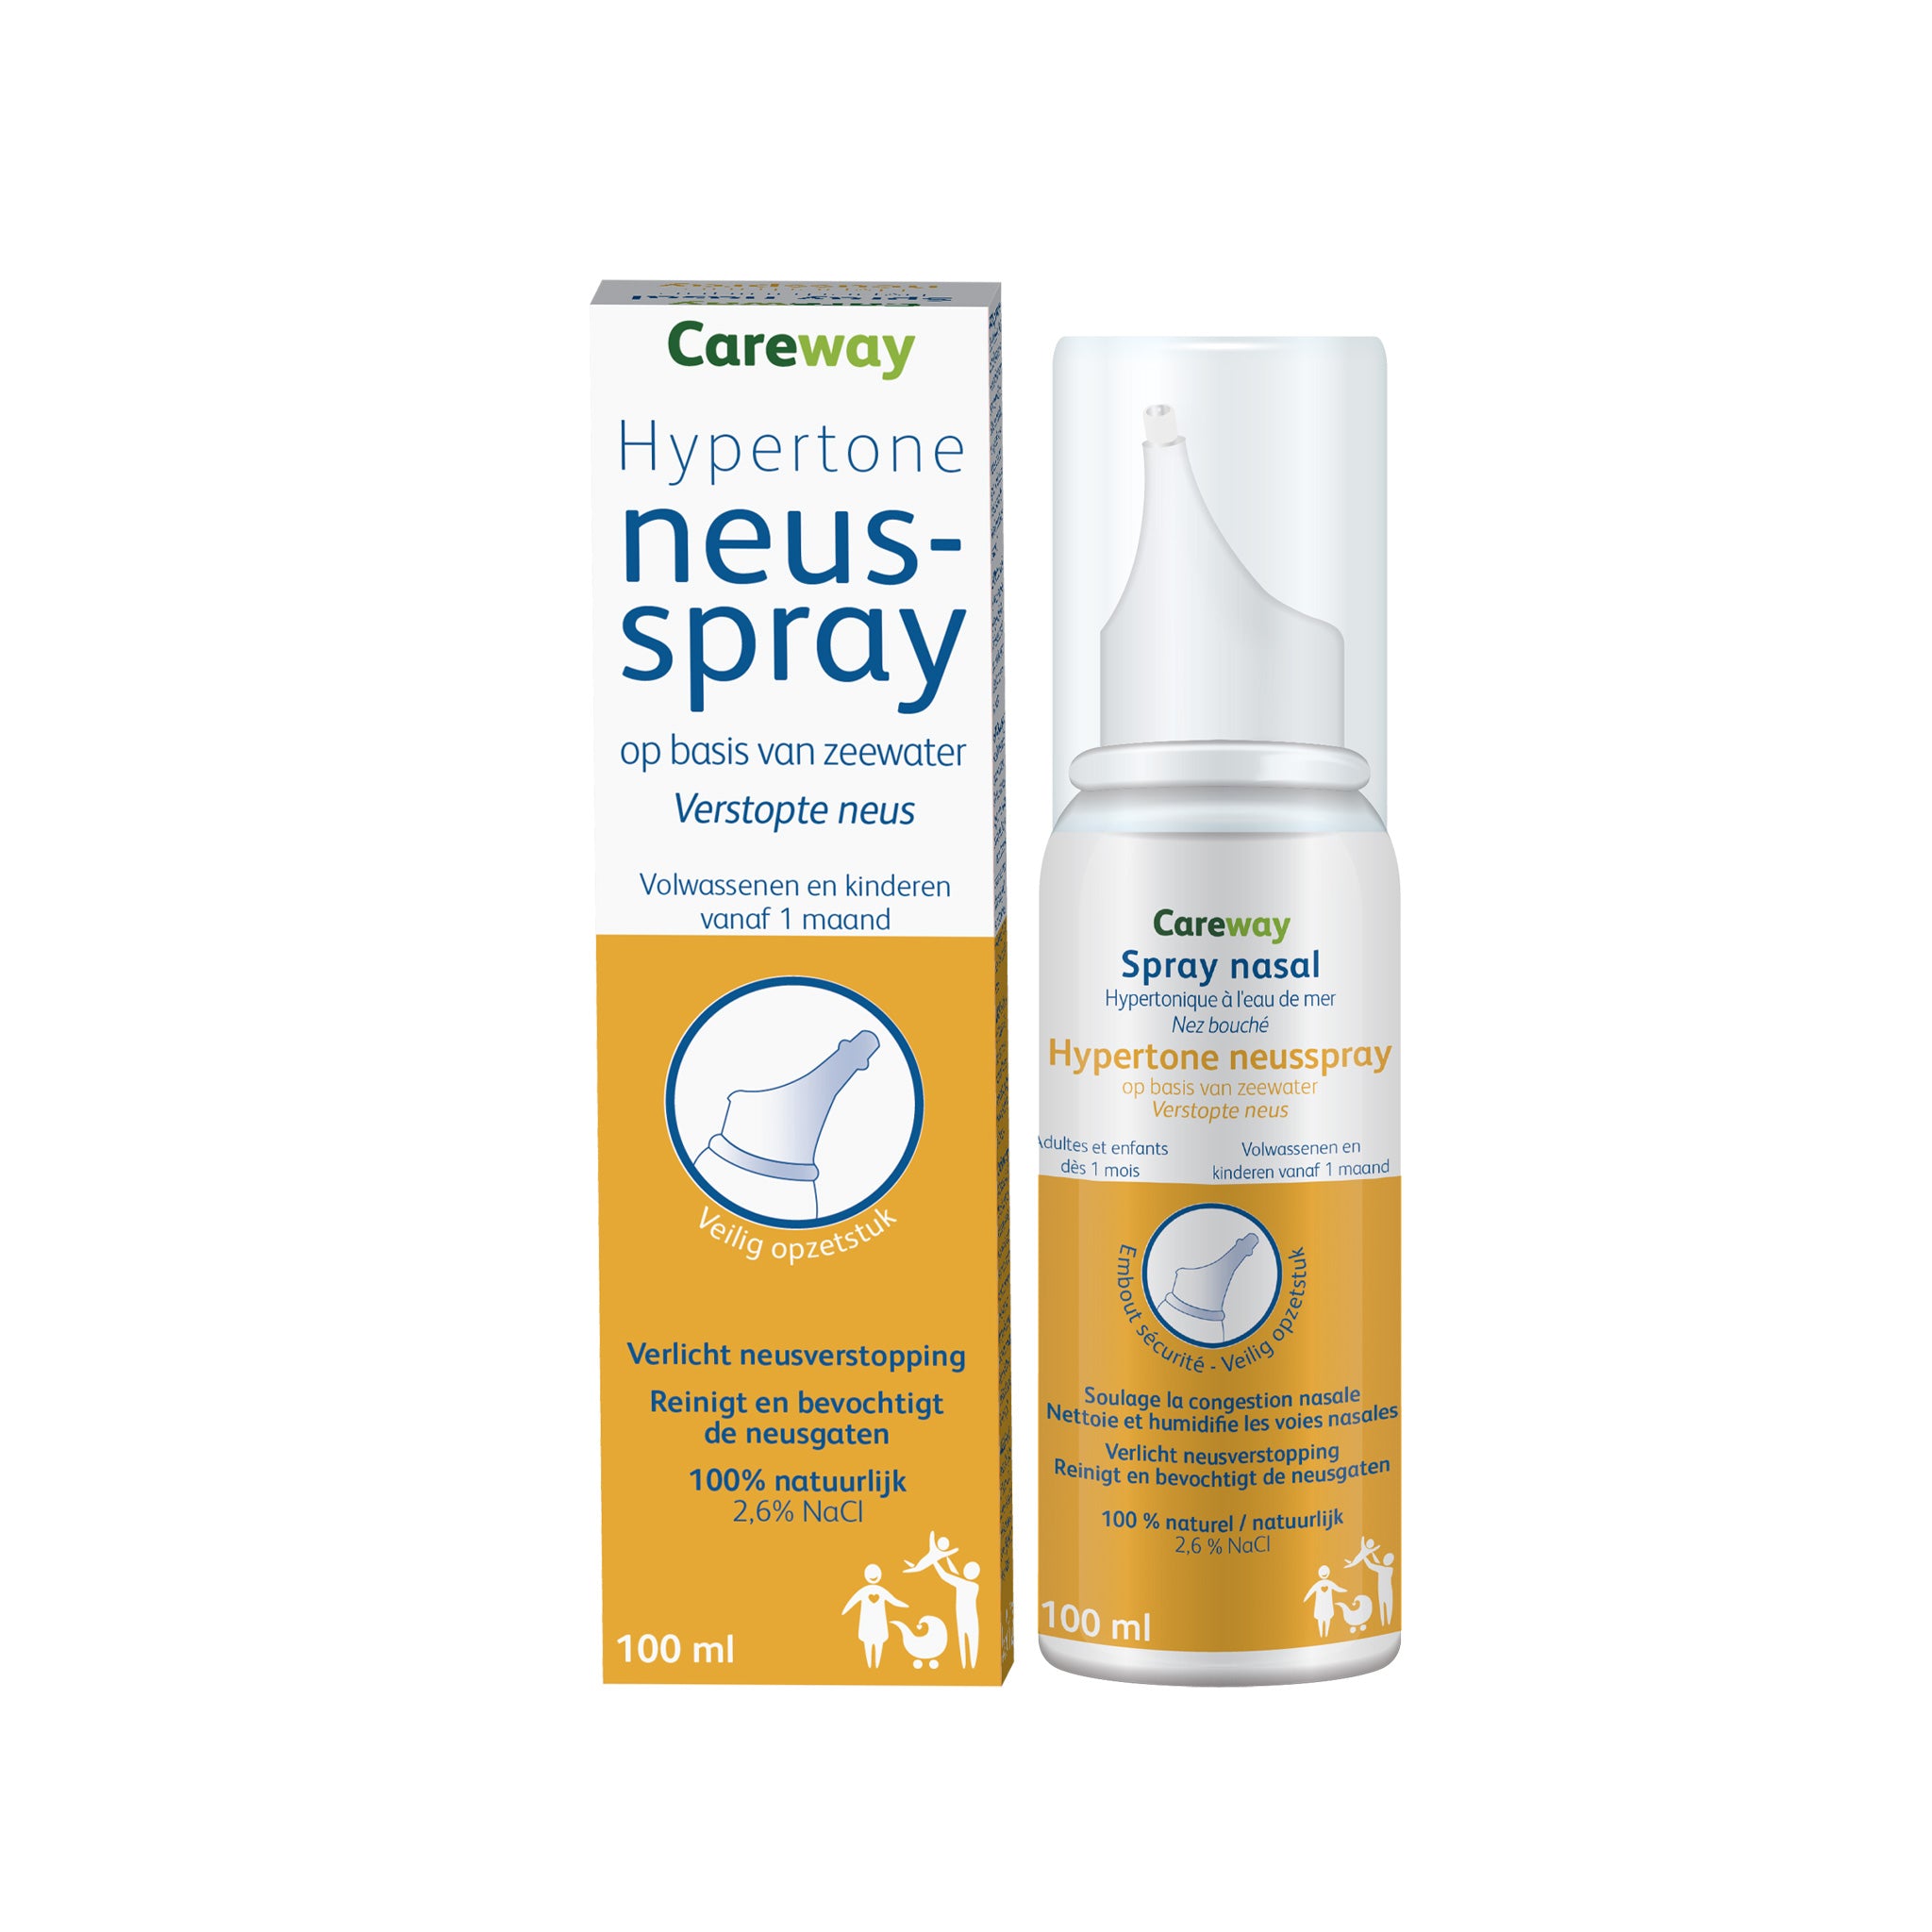 Careway Nasal Hypertonische Neusspray | Lloydspharma Apotheek – LloydsPharma